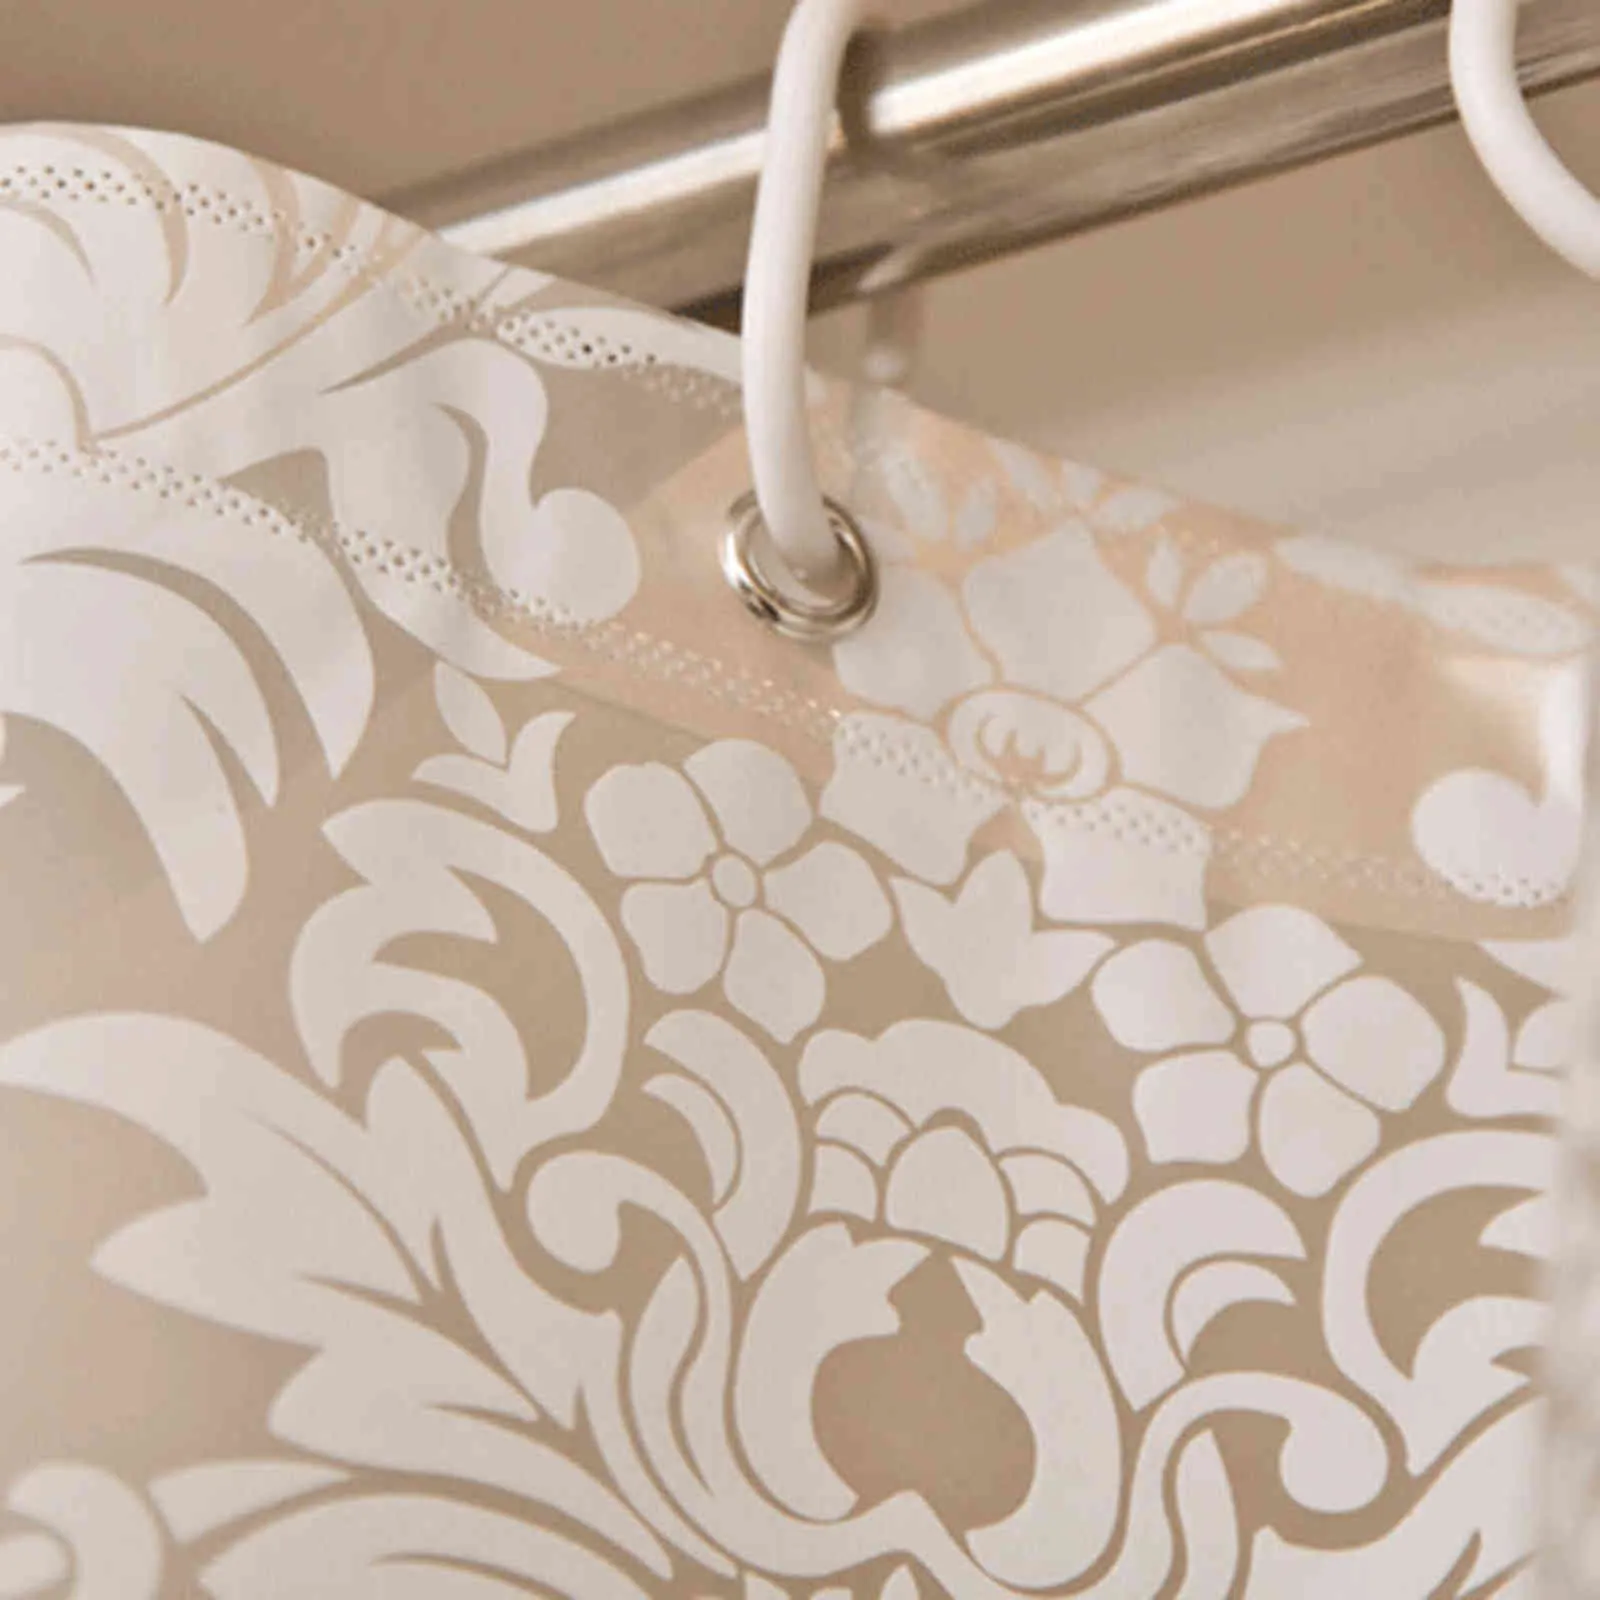 Mode maroc PEVA rideau maison douche étanche bain salle de bain crochet imprimé Floral Europe 211116